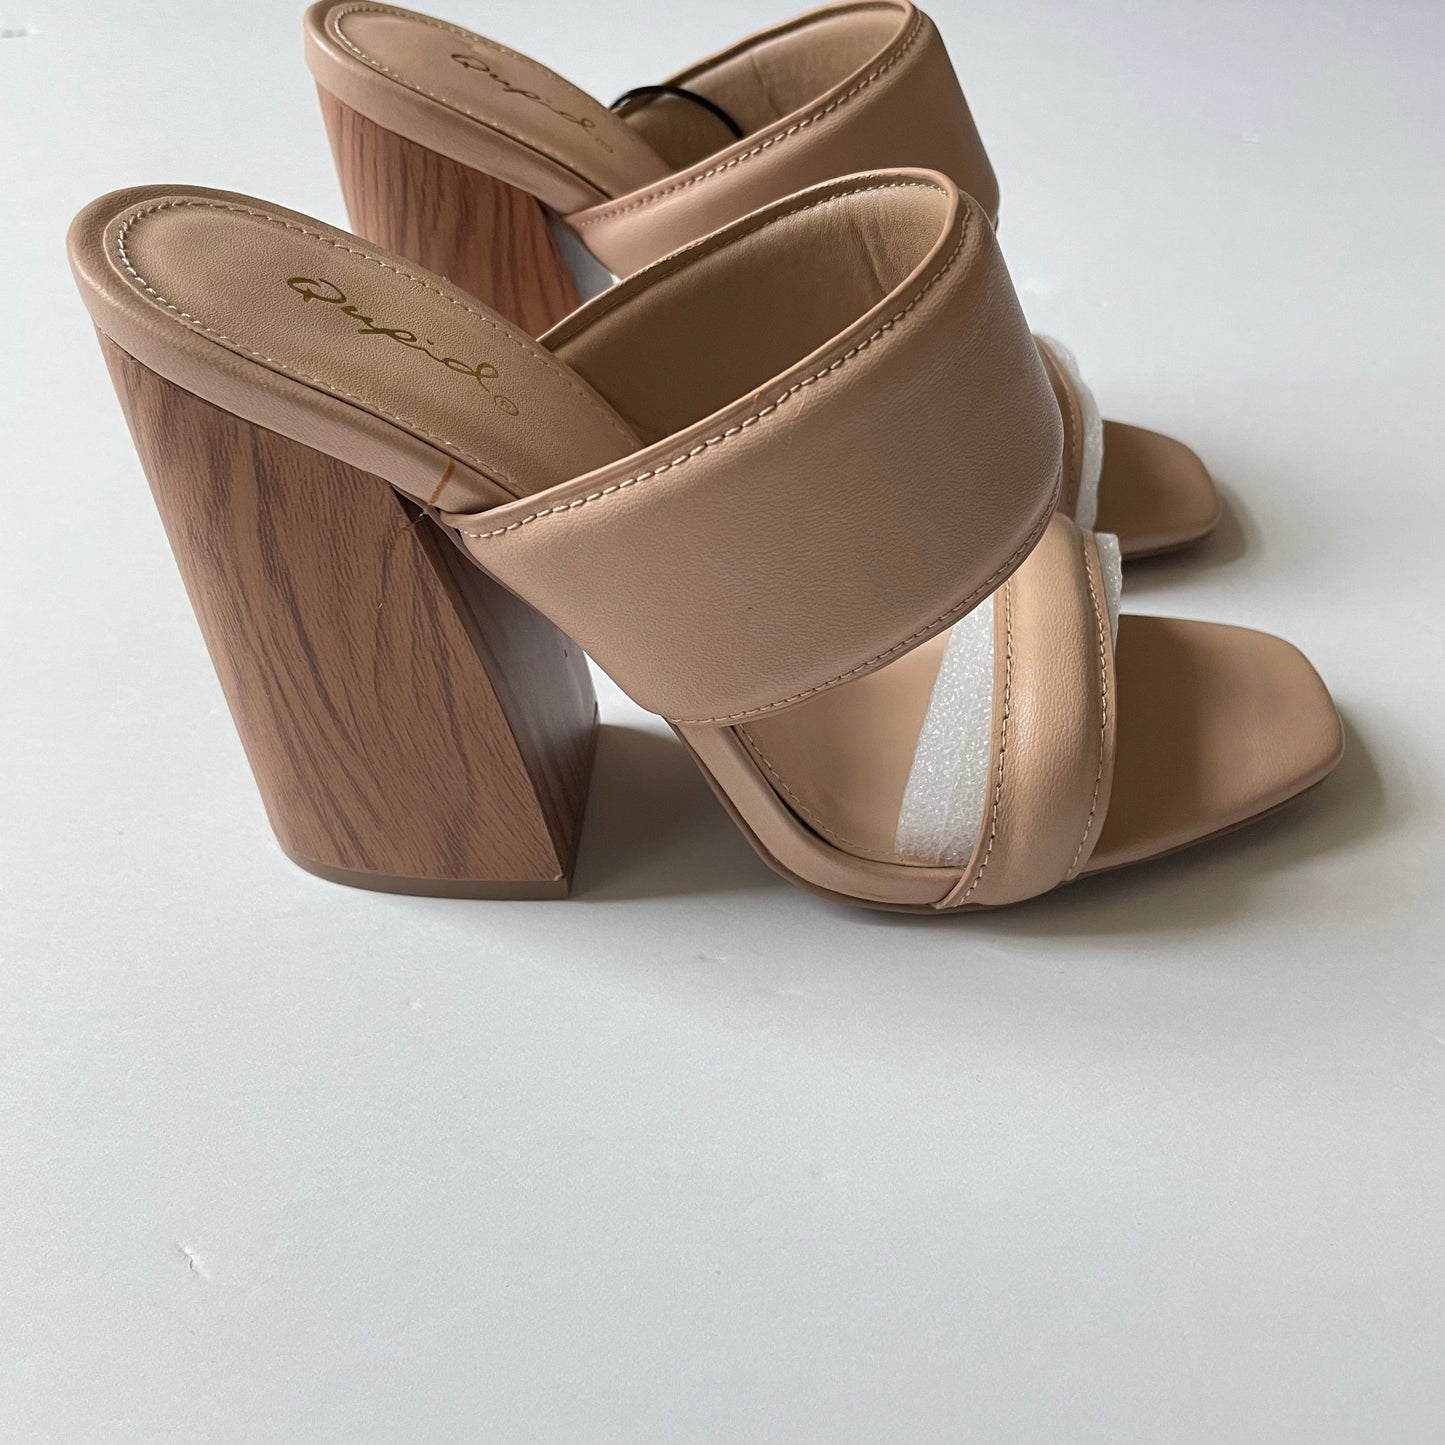 Tan Shoes Heels Block Qupid, Size 8.5